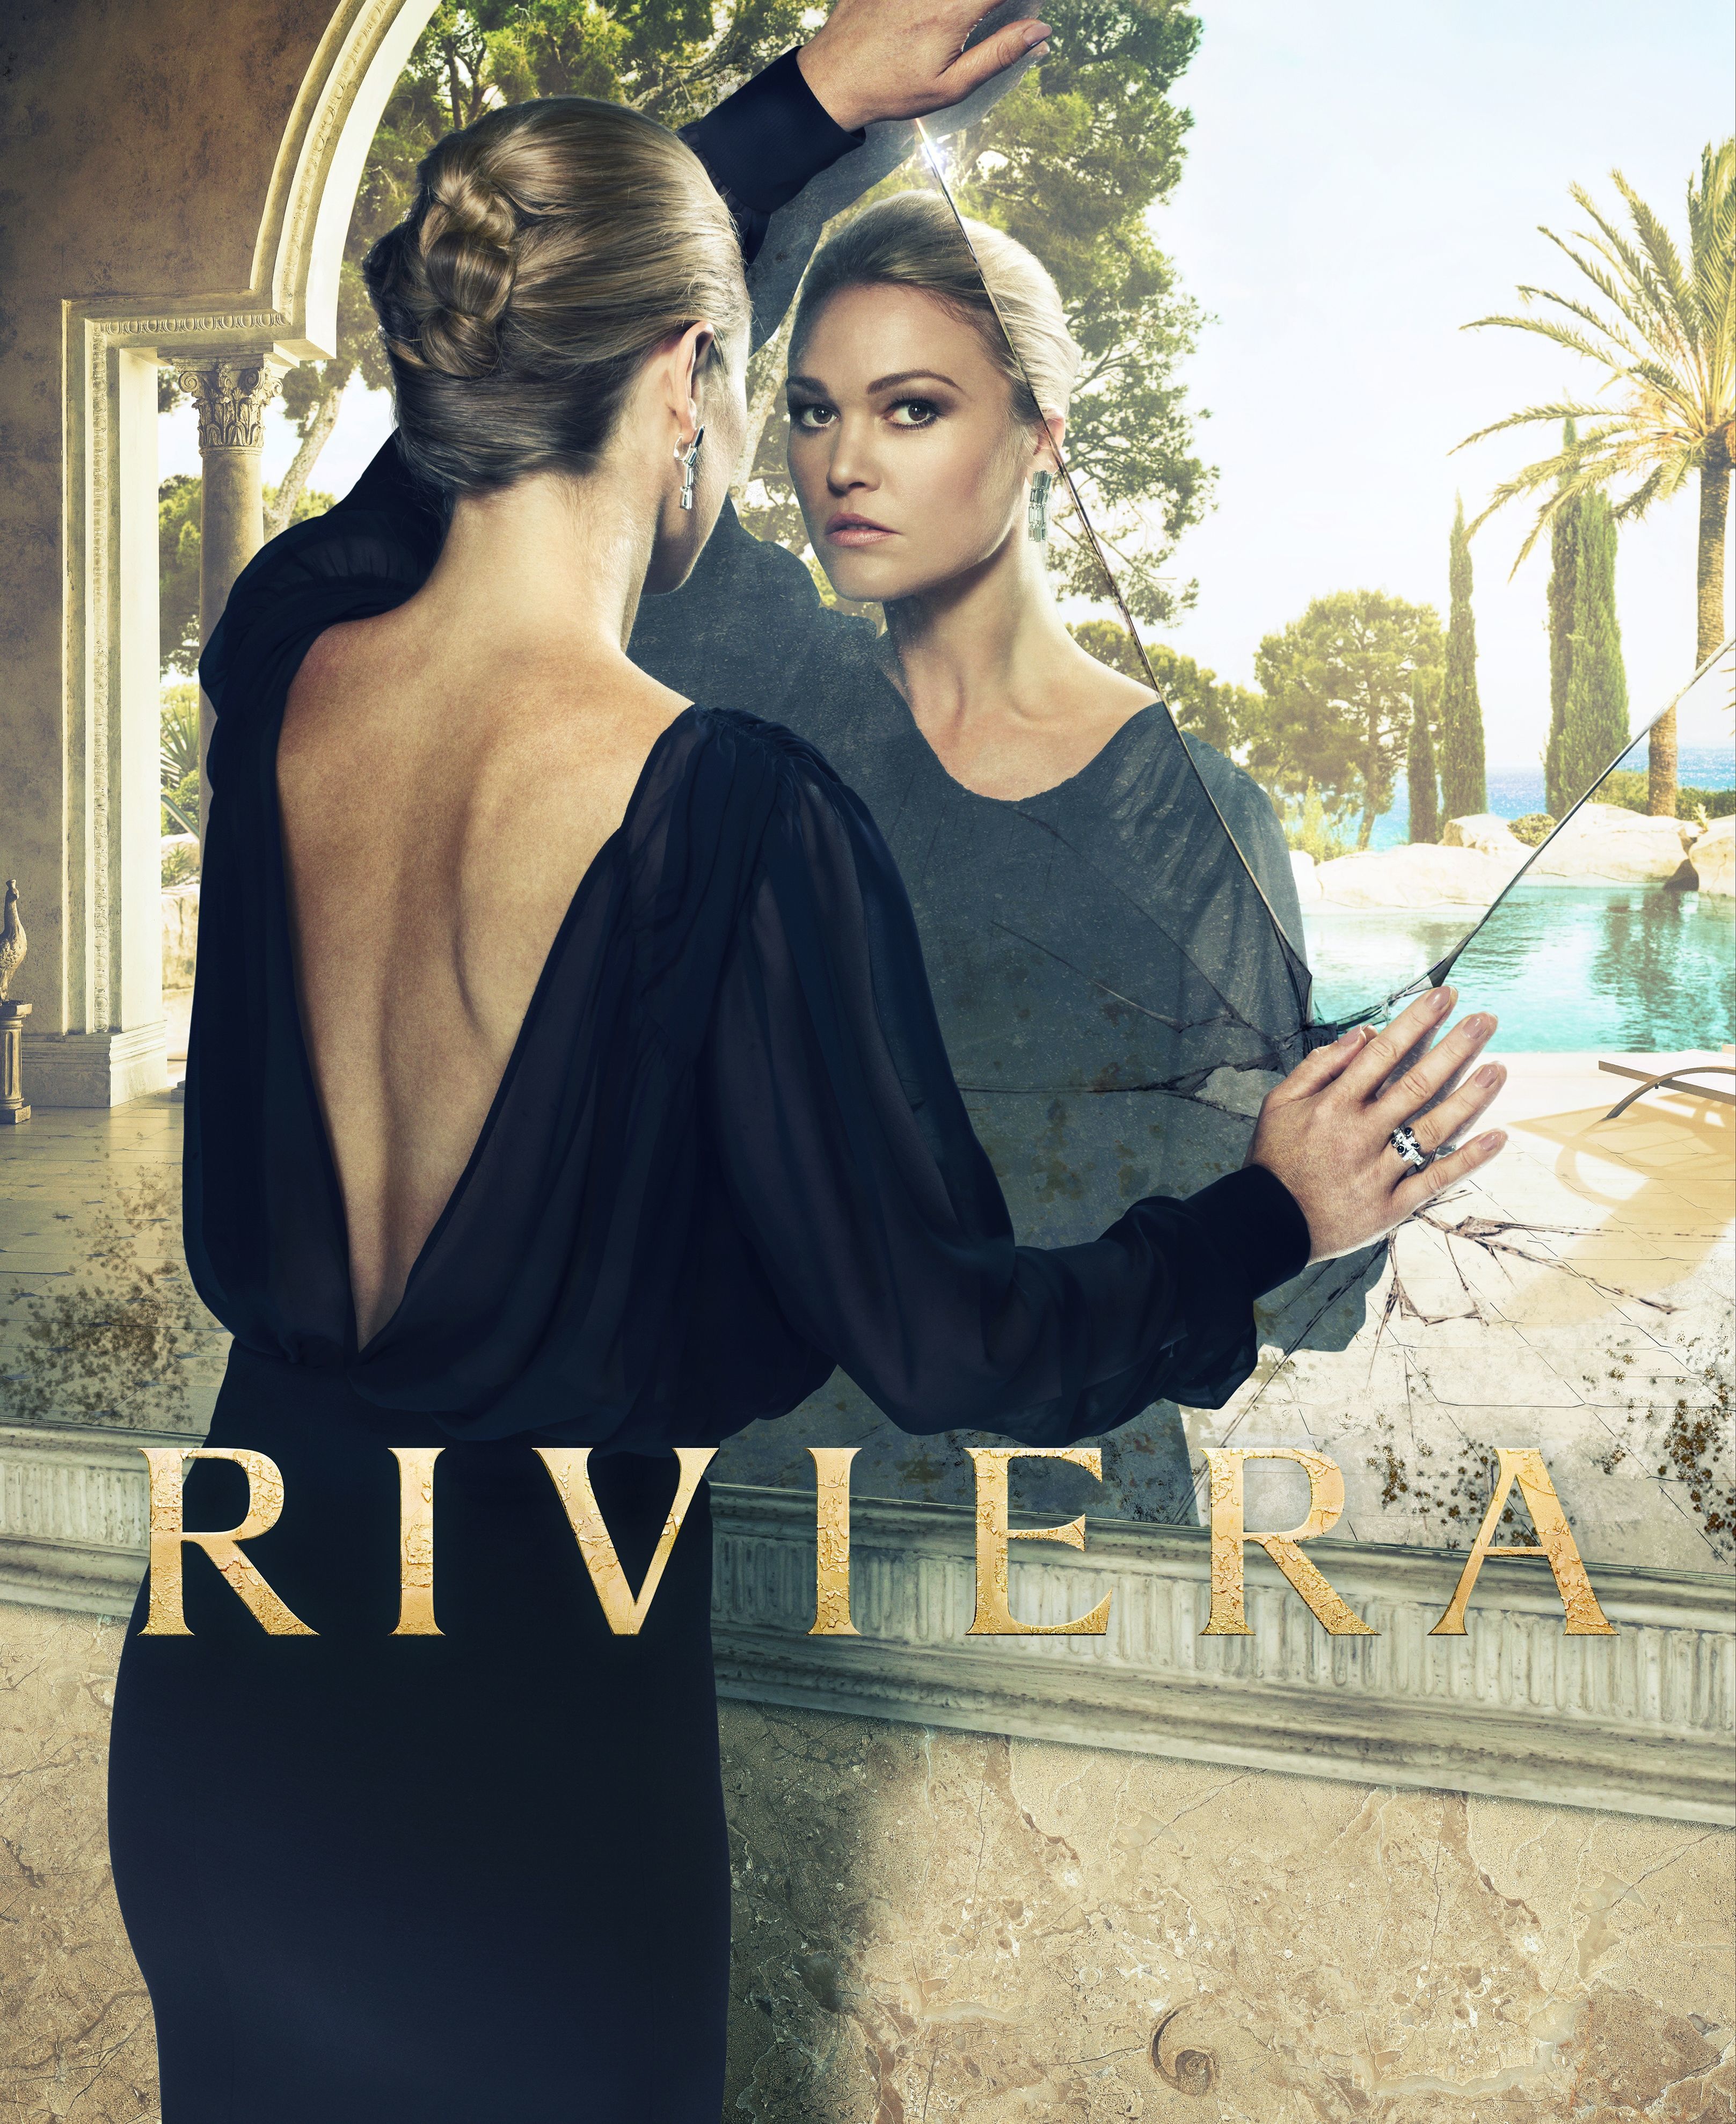 Riviera ne zaman